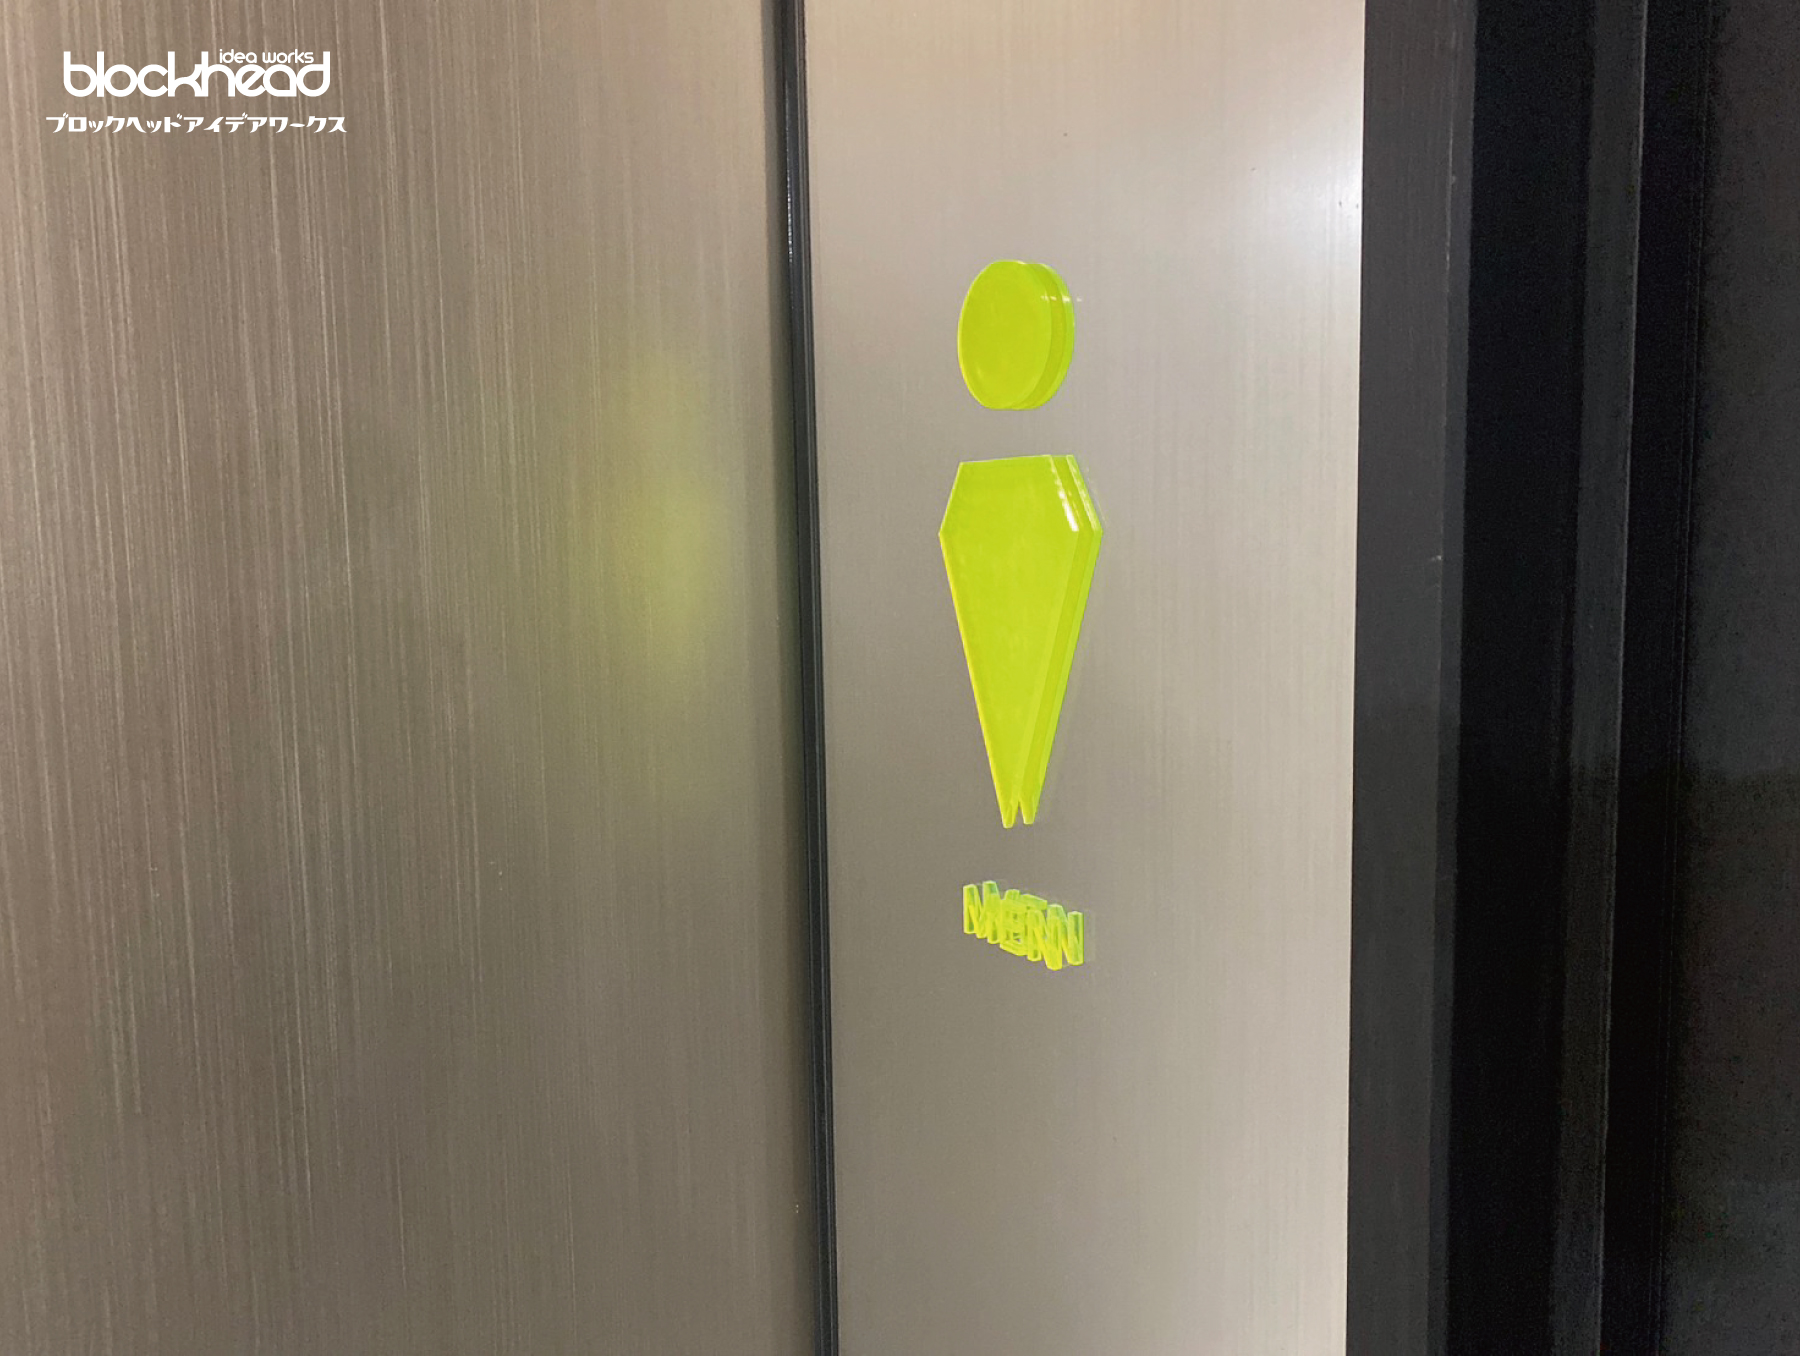 切り文字,ピクトサイン,黄緑色,男性用トイレのピクト